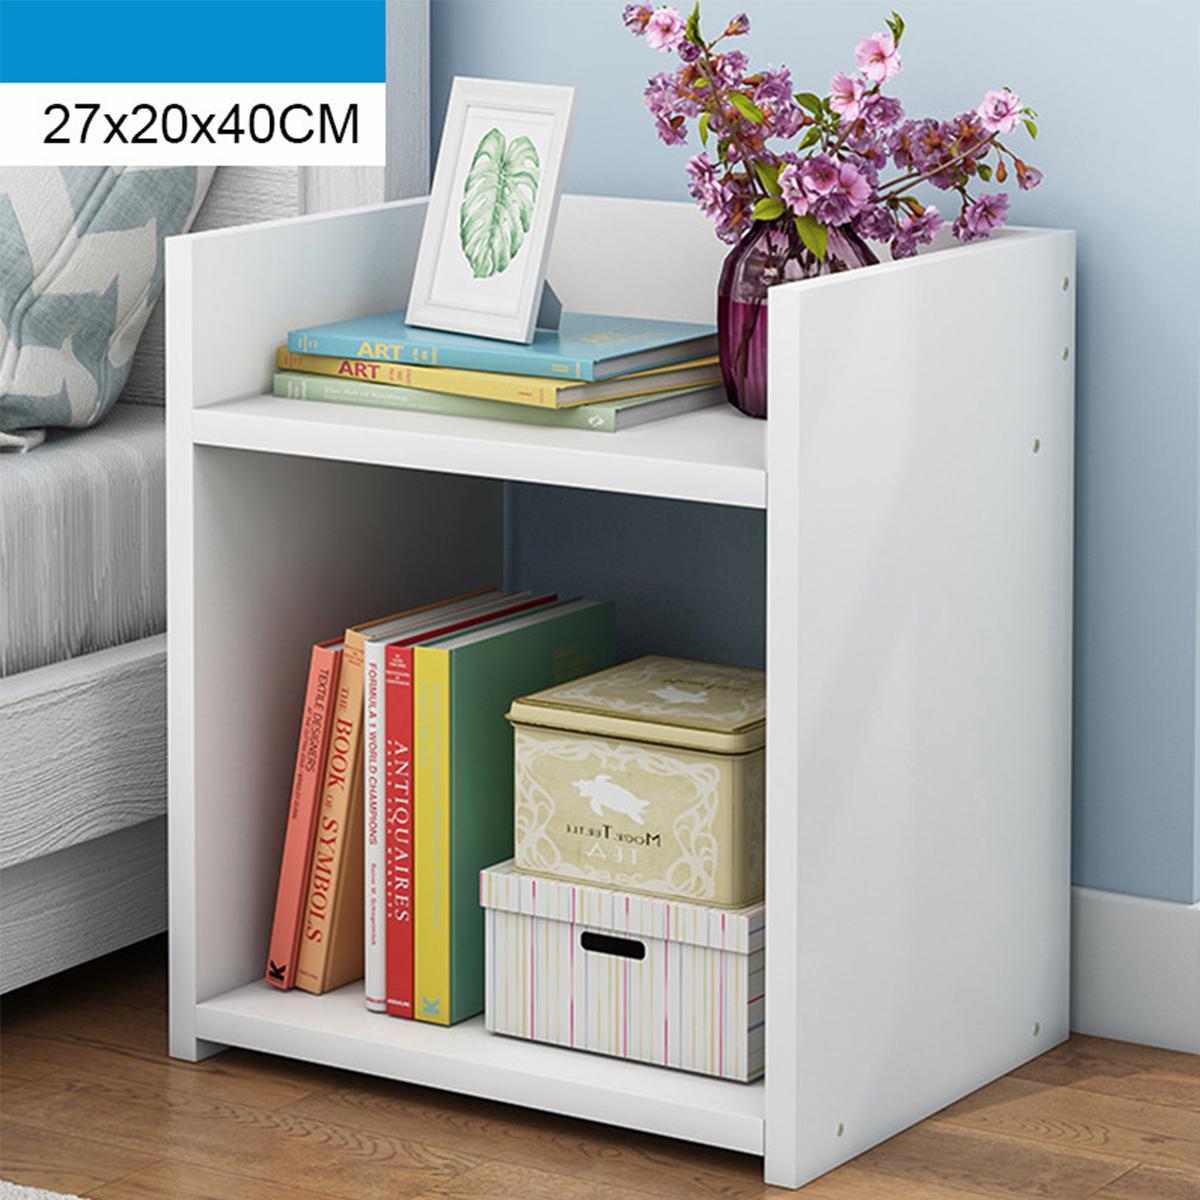 Assembled-Storage-Cabinet-Wooden-Storage-Bedside-Cabinet-White-Bedroom-Locker-for-Home-Office-1752104-1